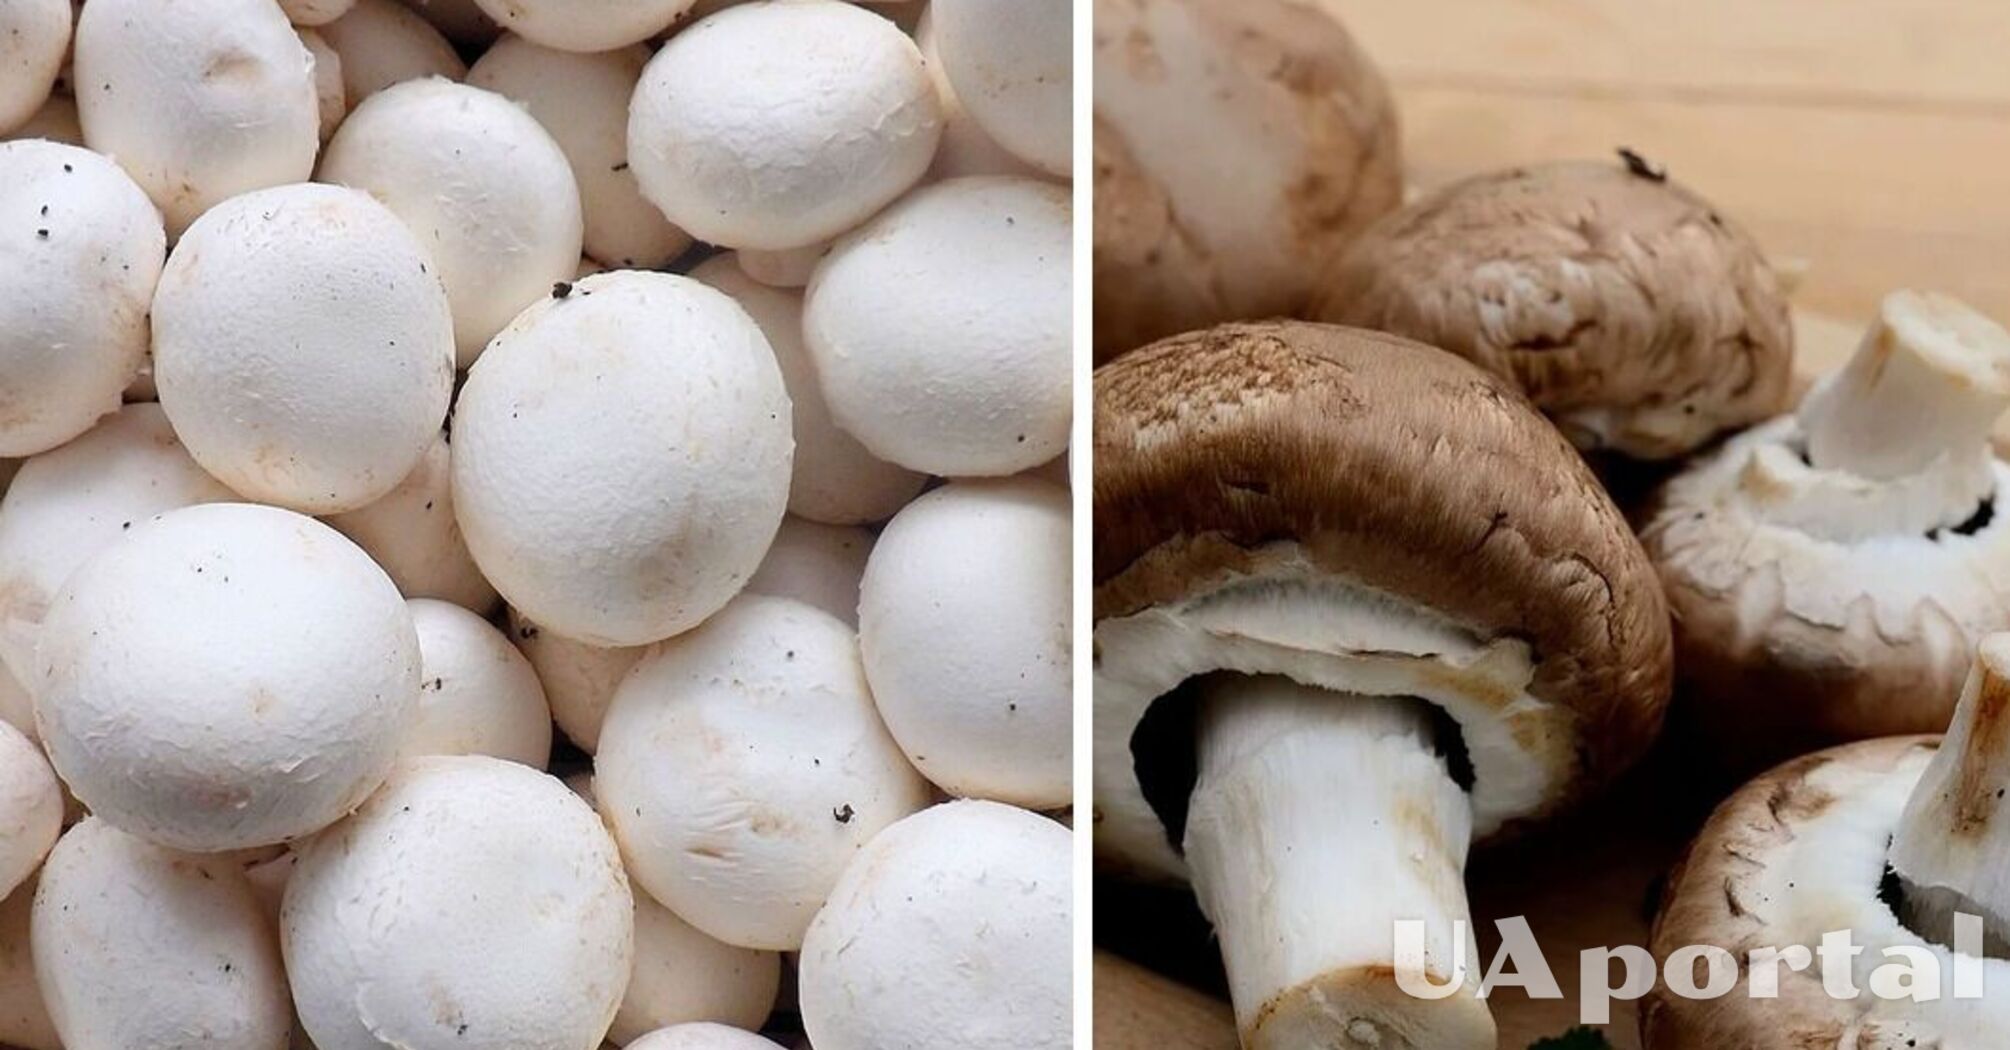 Эксперты подсказали, как хранить грибы, чтобы они не покрывались слизью и оставались свежими